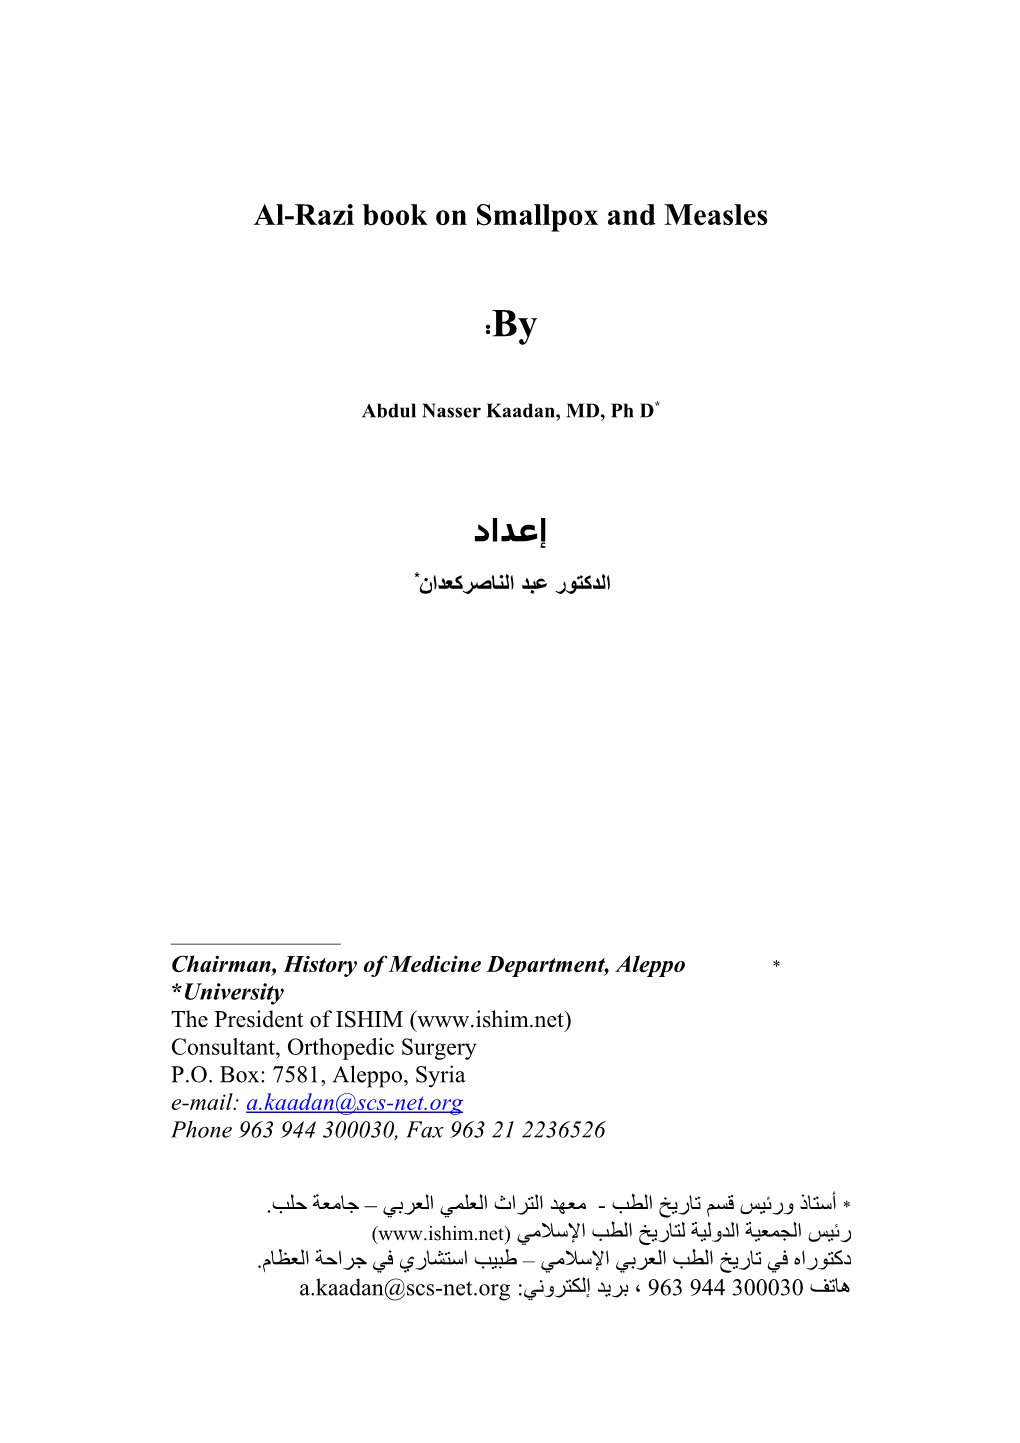 Al-Razi Book on Smallpox and Measles